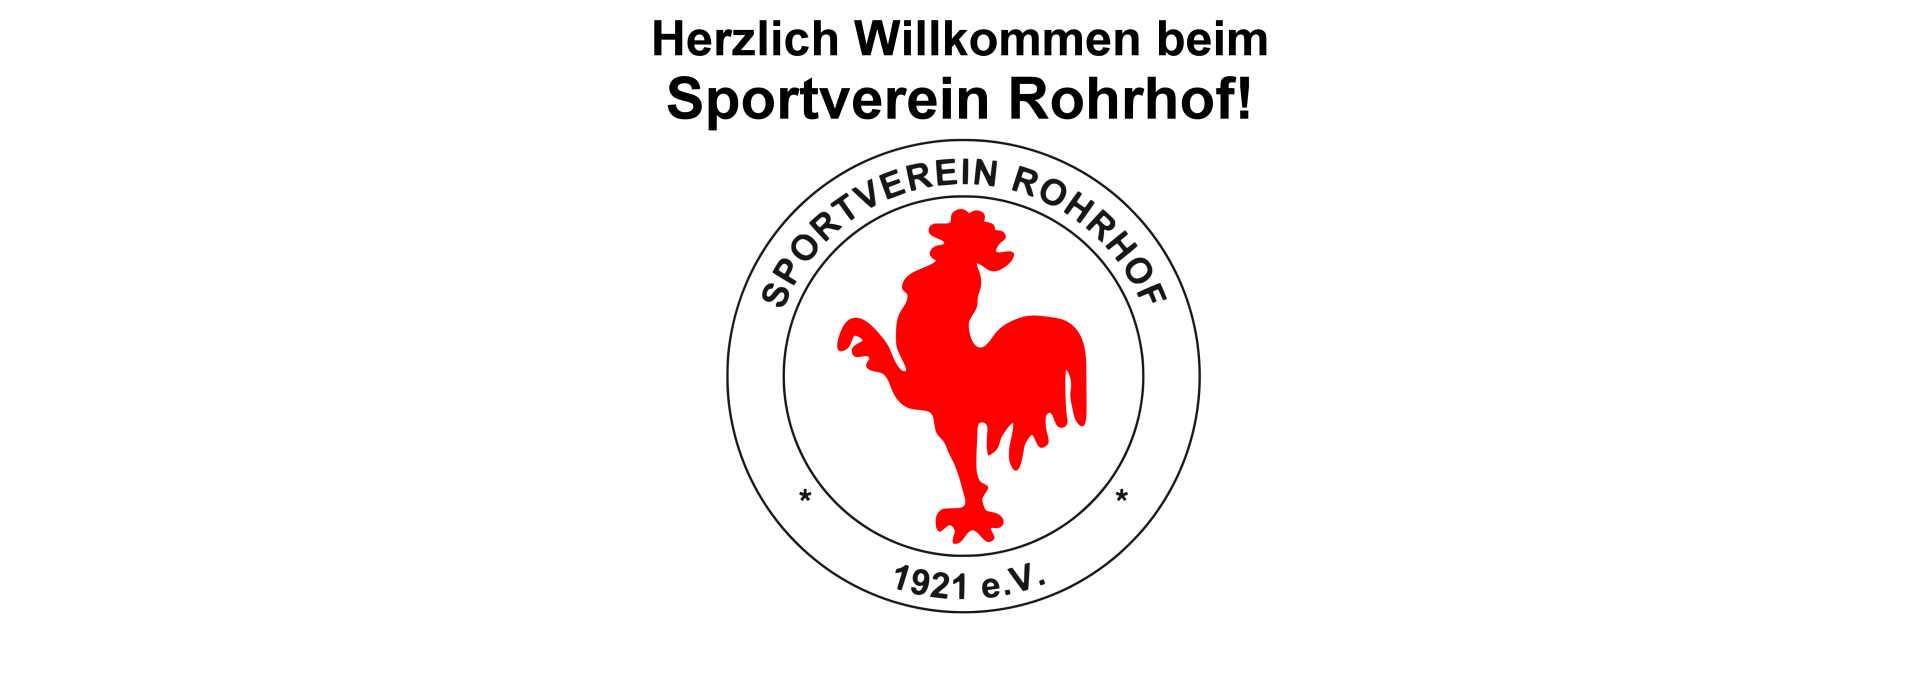 Willkommen beim Sportverein Rohrhof